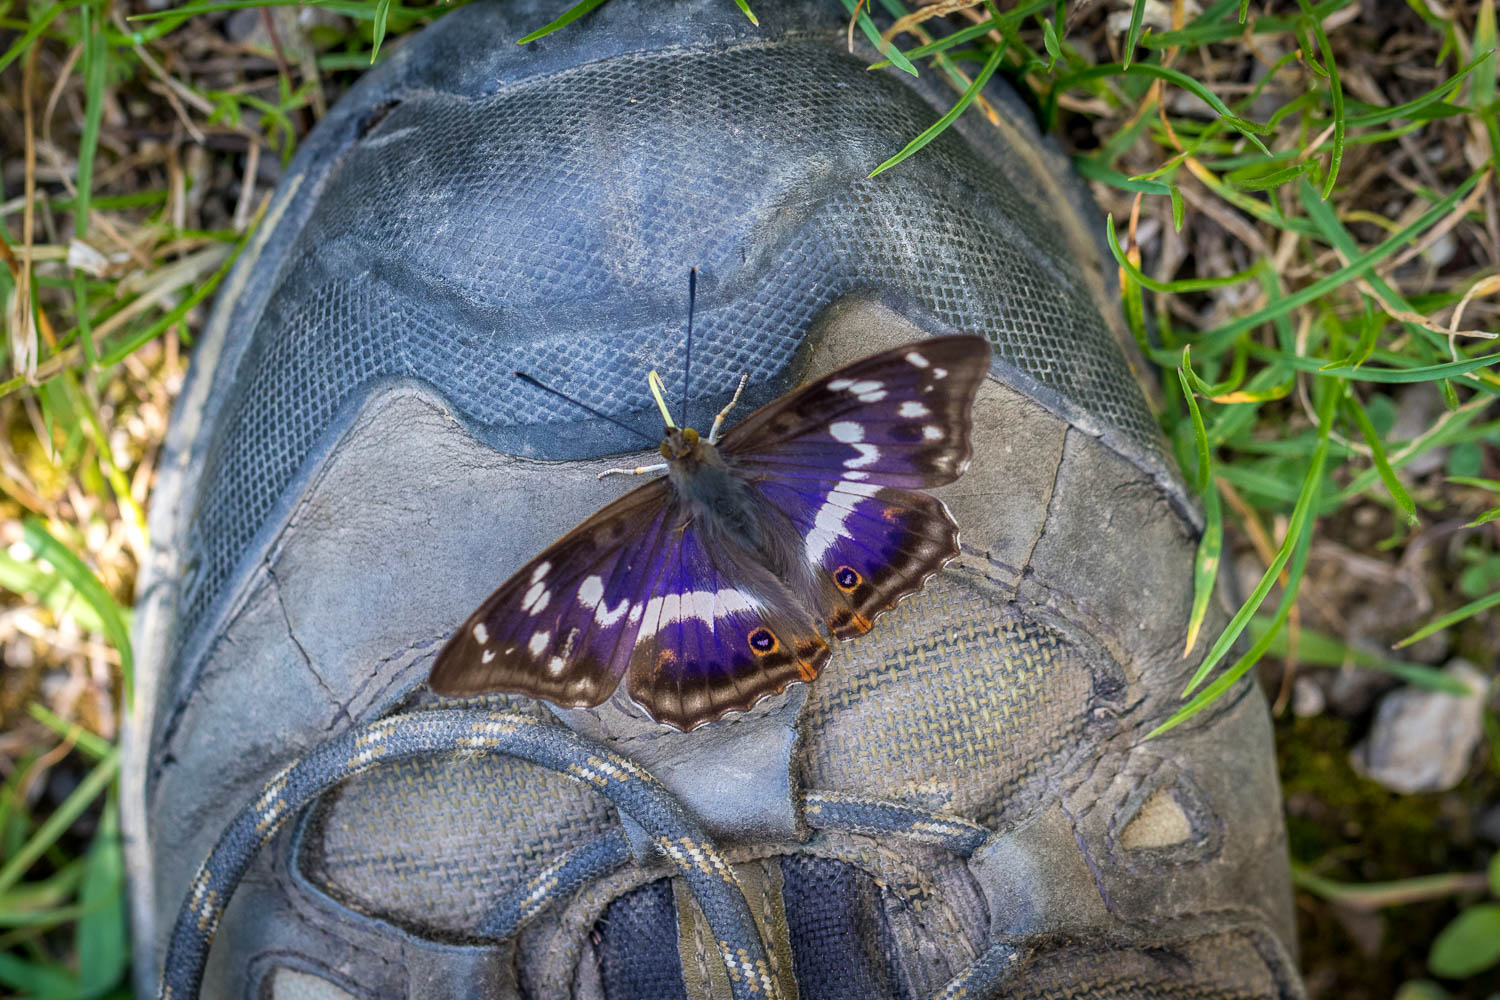 Butterfly on walking boot